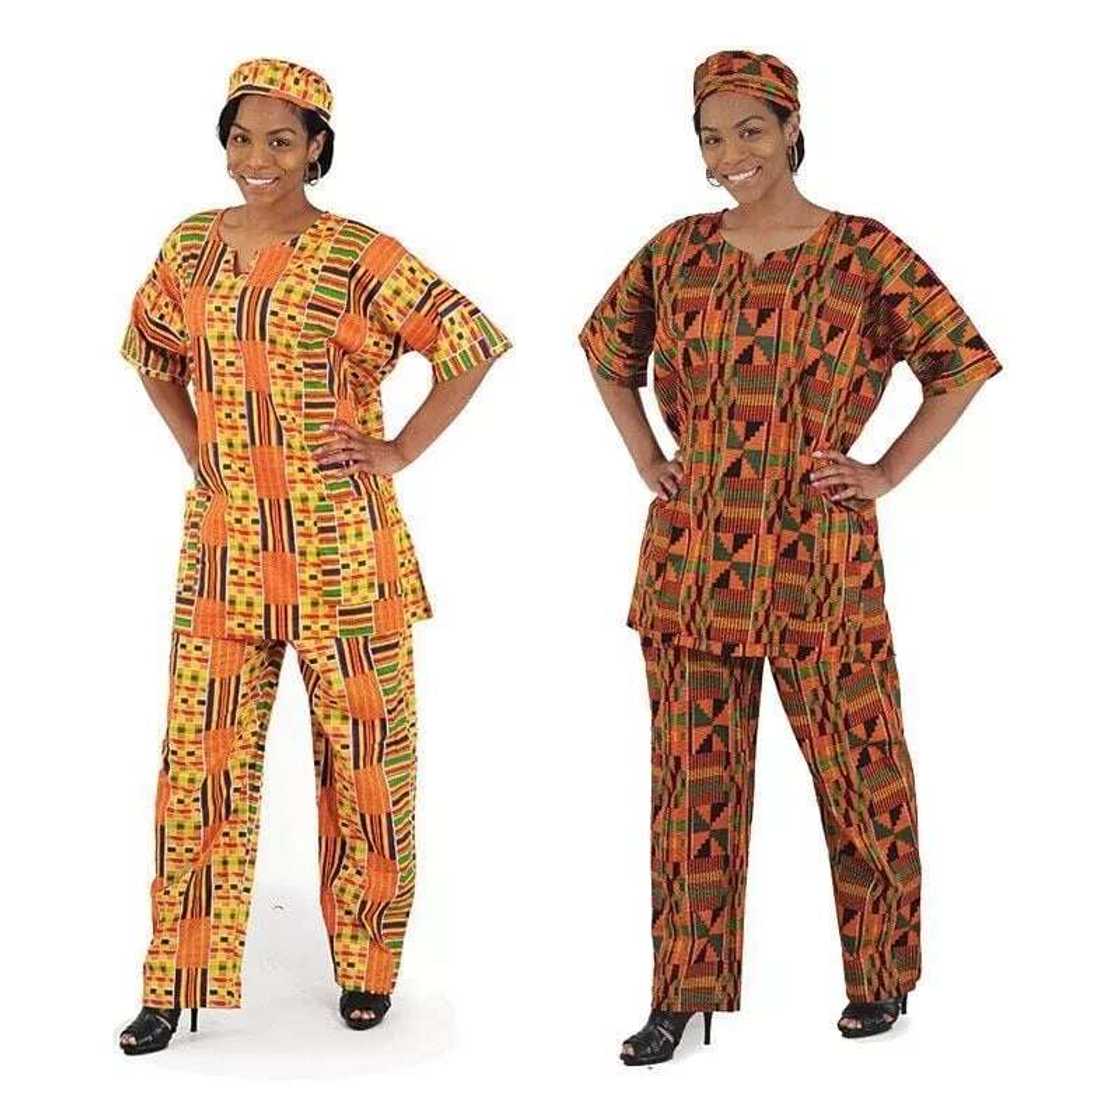 latest kente styles in ghana
dress styles in ghana
kente styles for ladies
latest dress styles in ghana